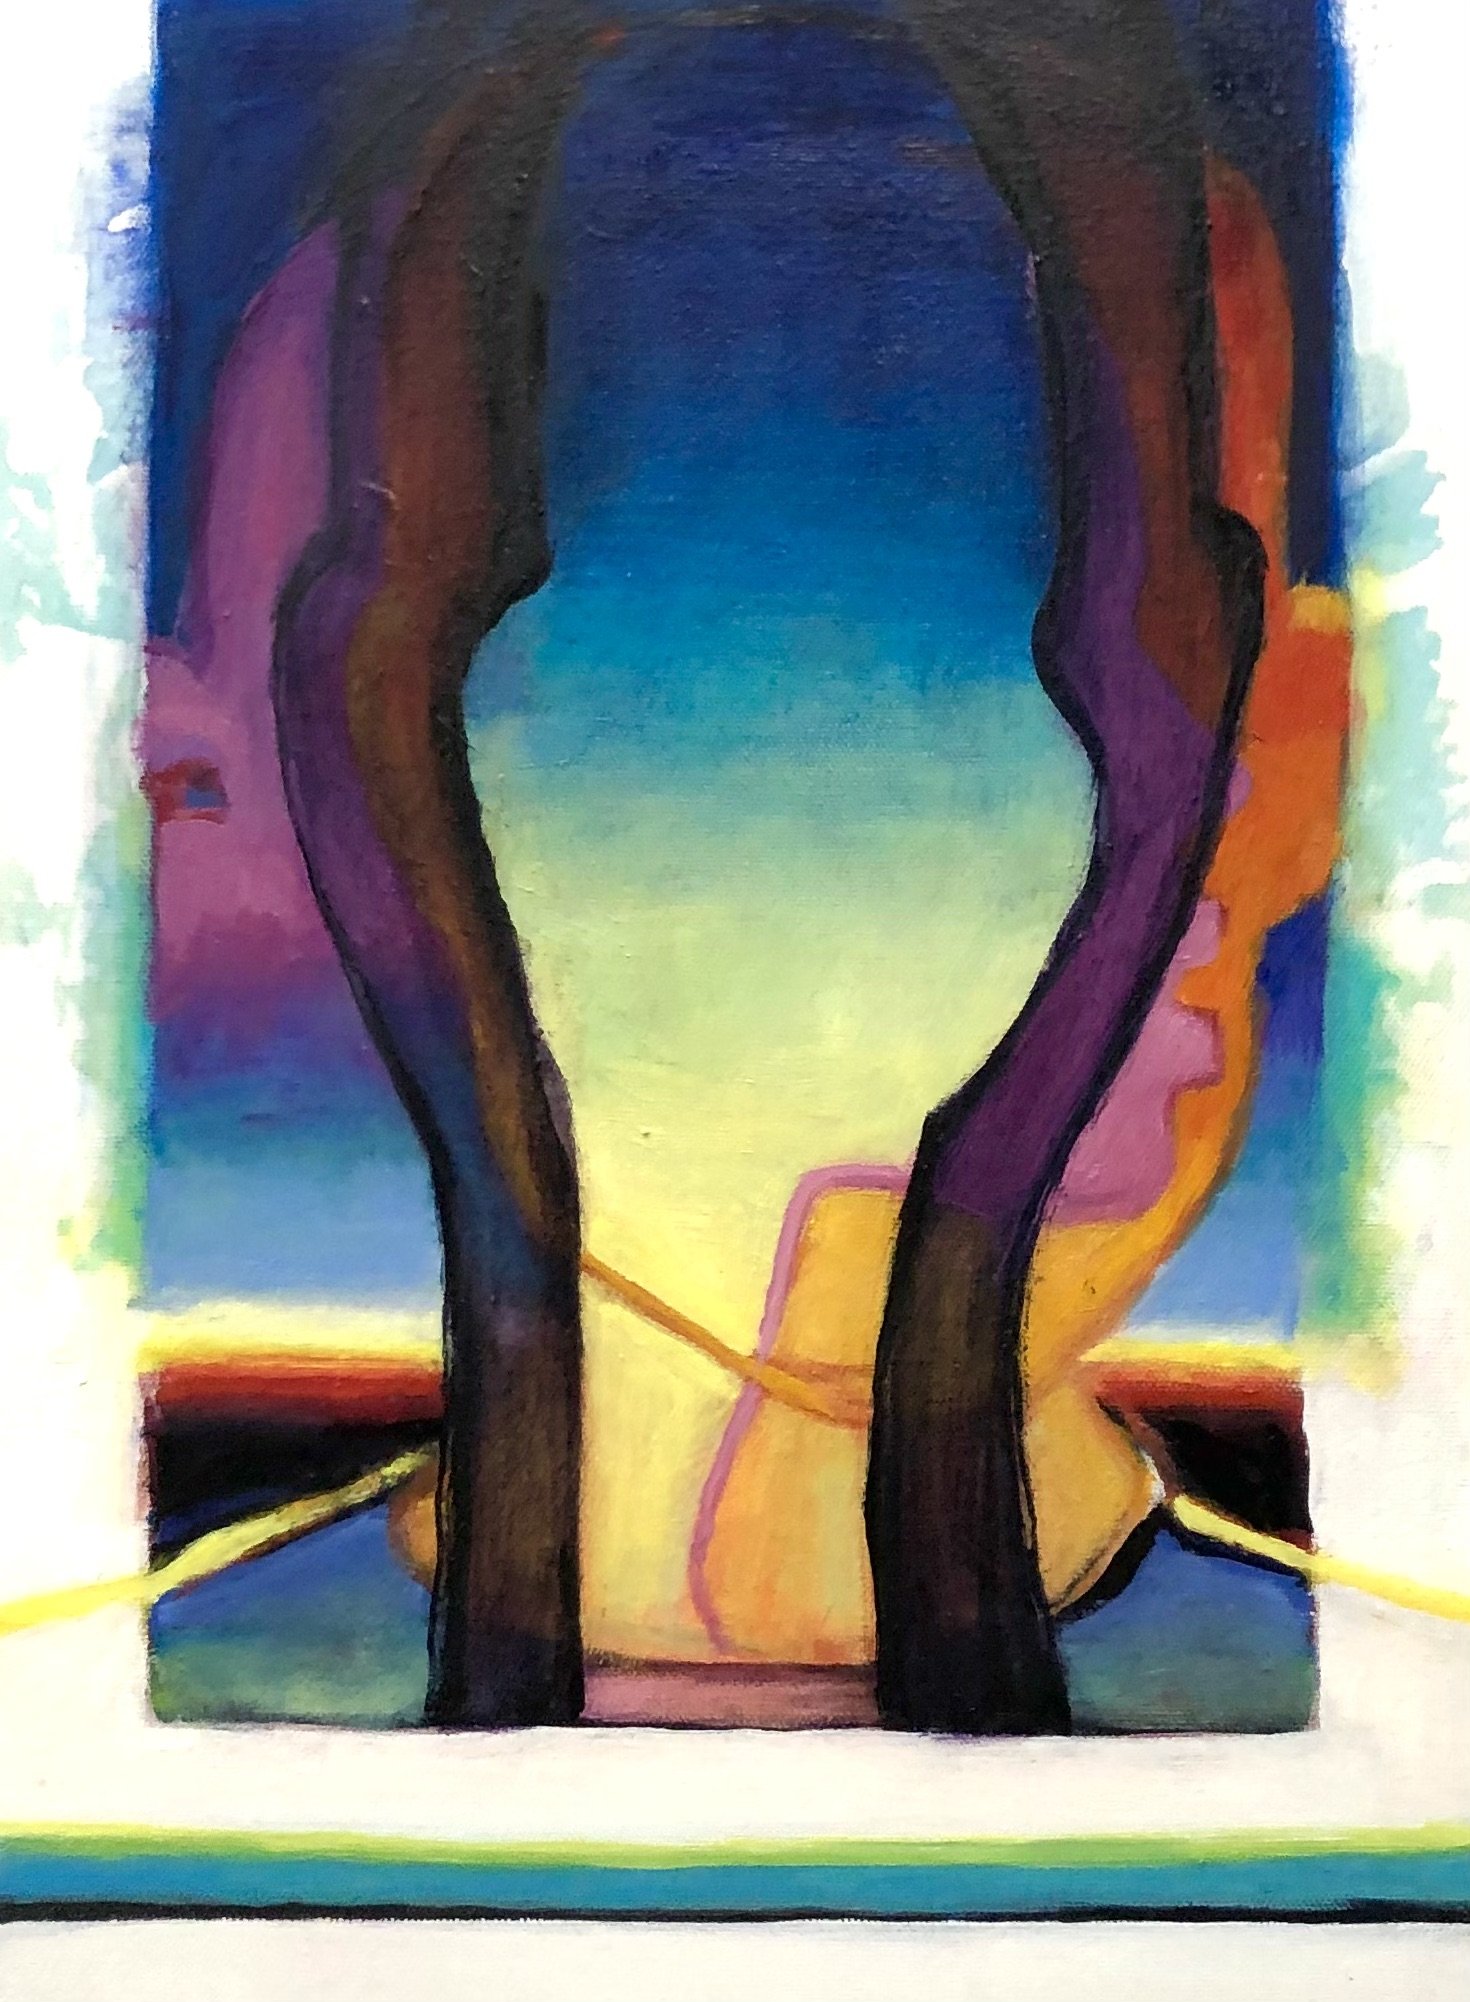 Sunset Head 2, 16"x20", oil and acrylic on canvas, 2021